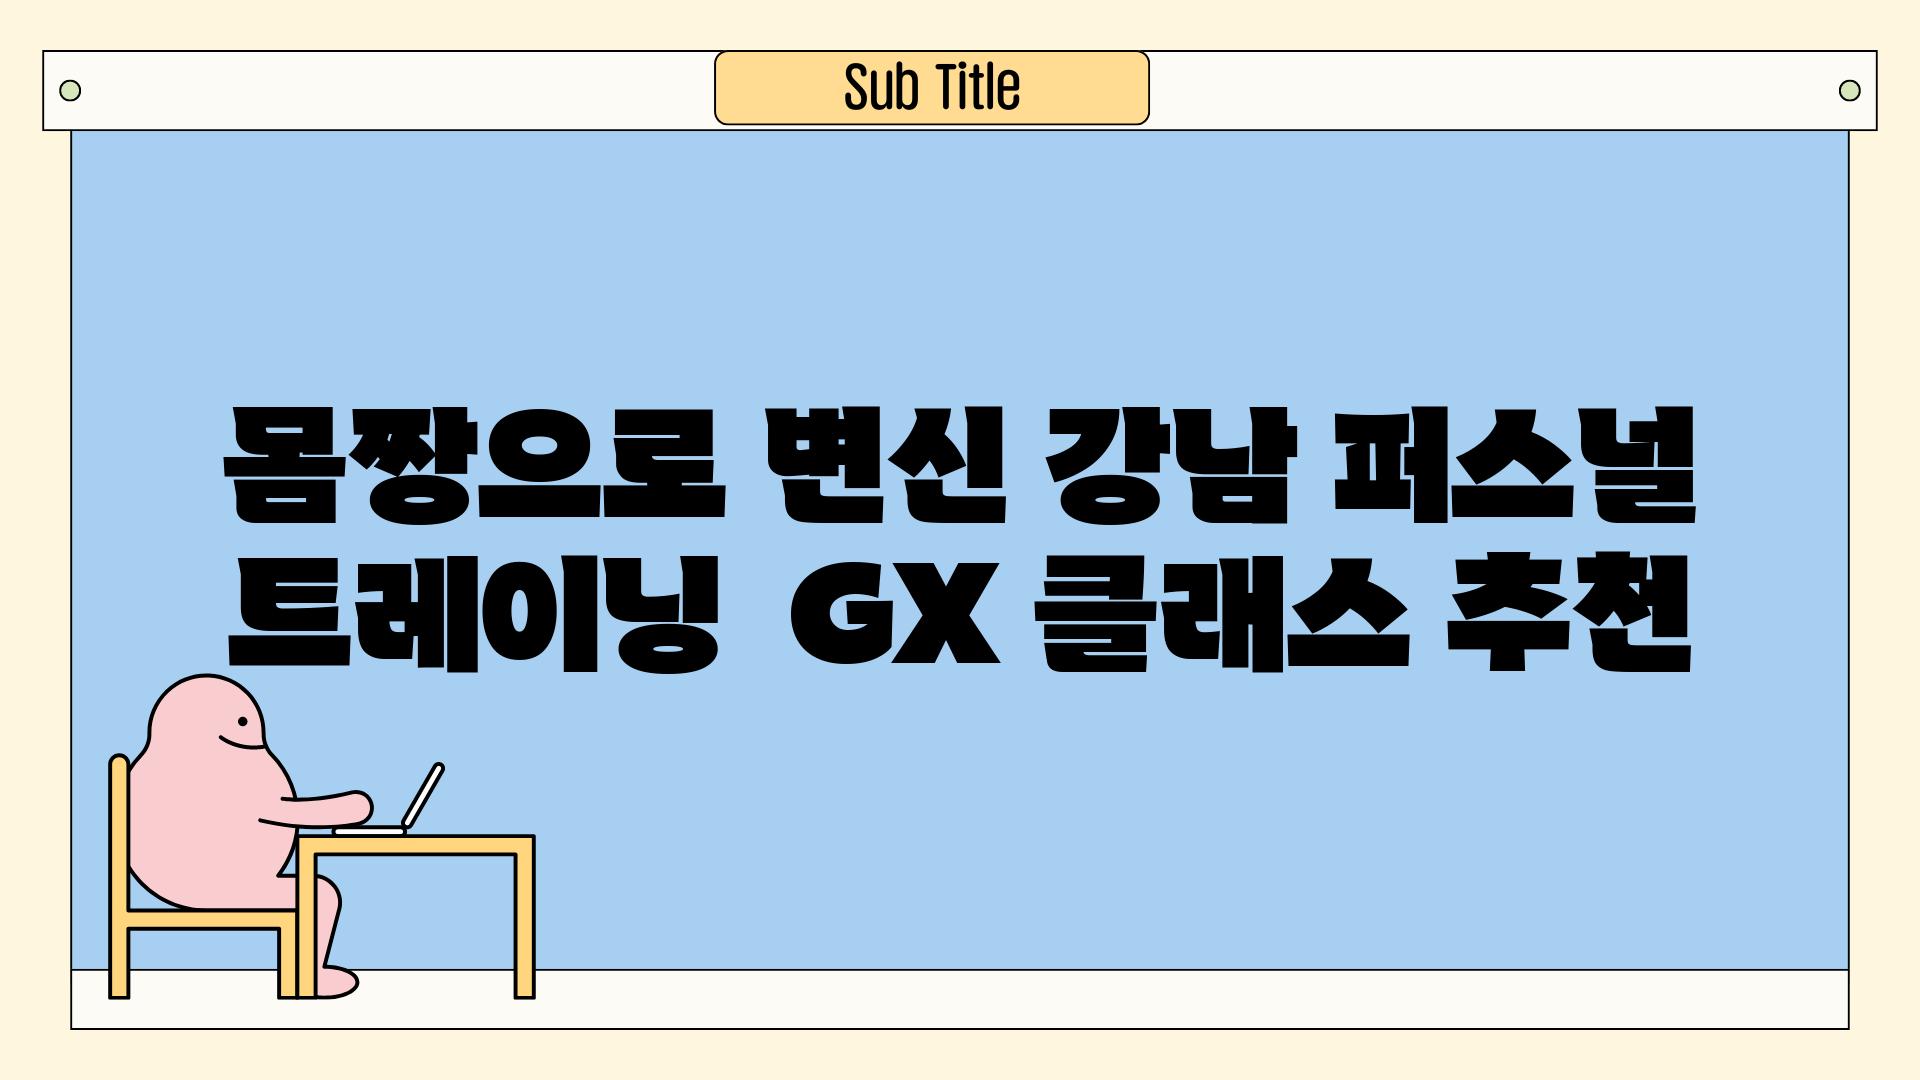 몸짱으로 변신 강남 퍼스널 트레이닝  GX 클래스 추천